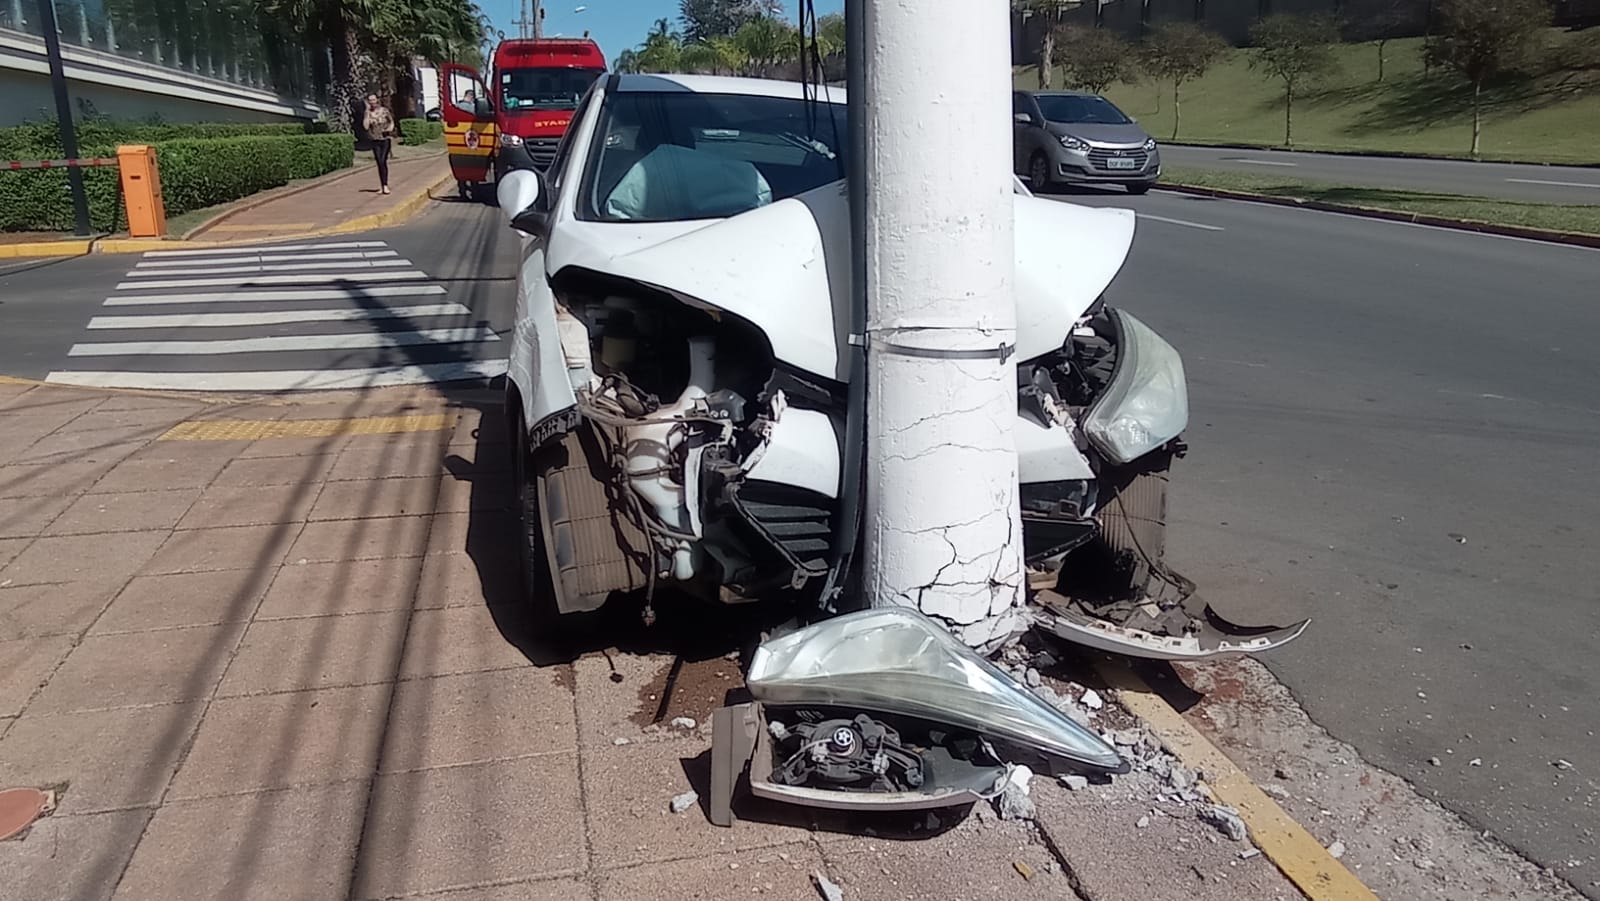 Homem passa mal e bate carro da família em poste na Avenida Maria Thereza, em Limeira